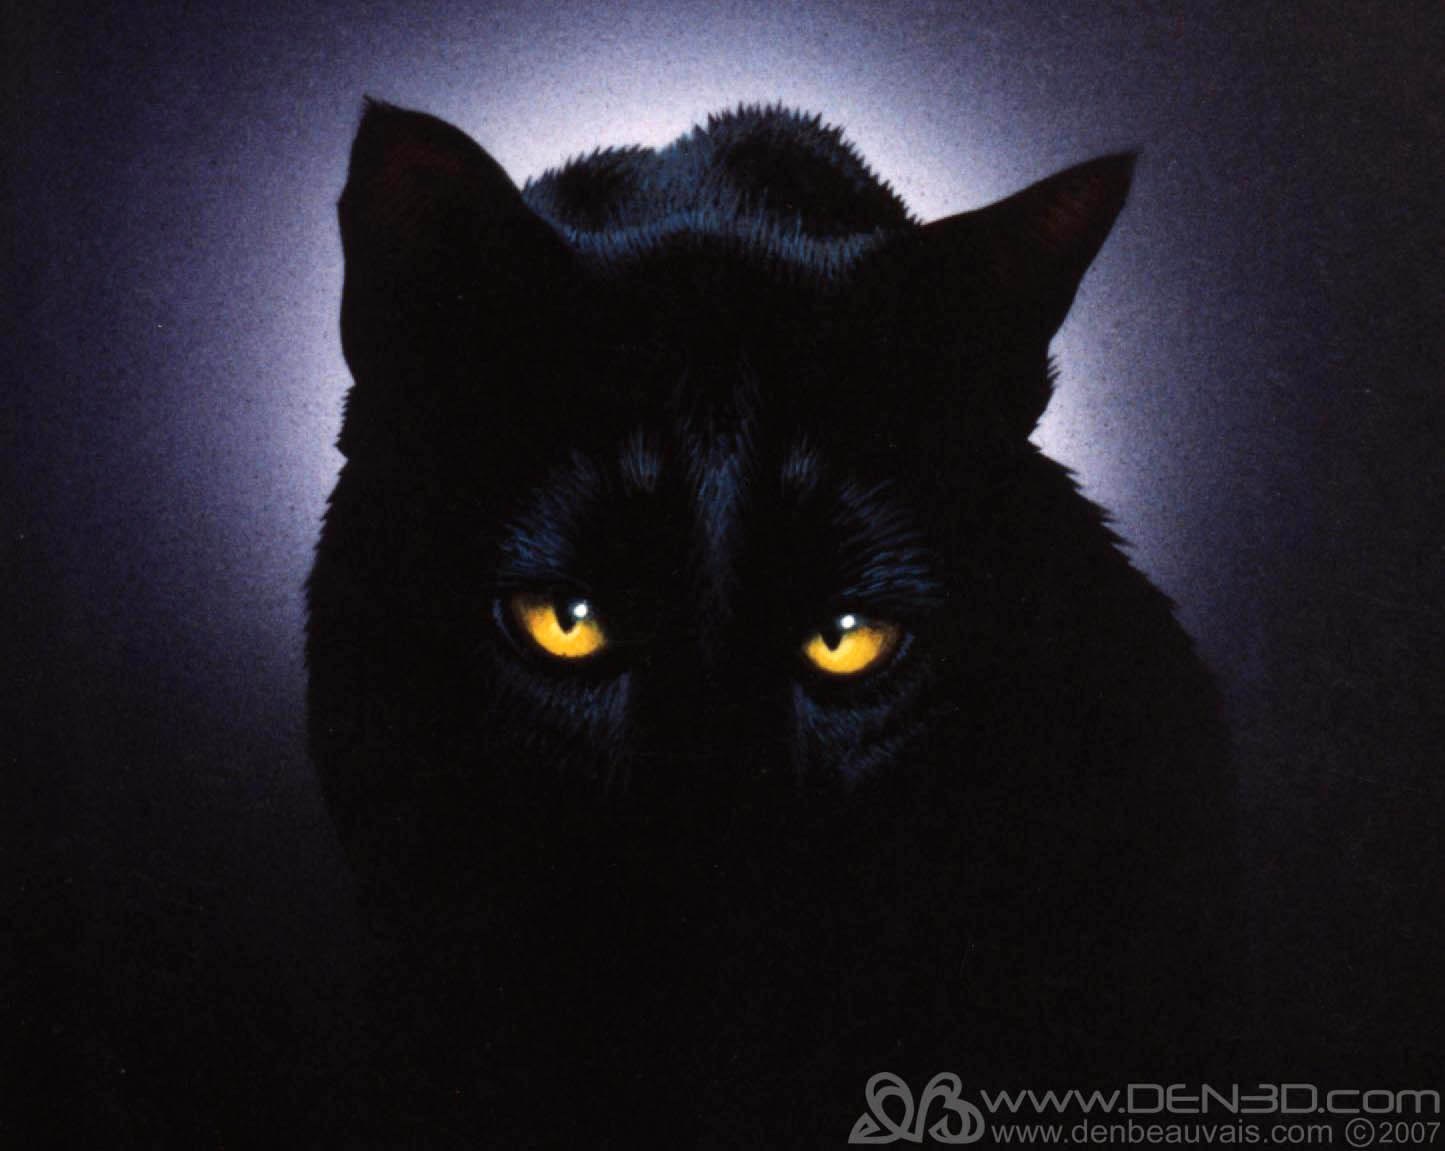 Аватар черный кот. Черная кошка. Красивая черная кошка. Черная ава. Черная аватарка.